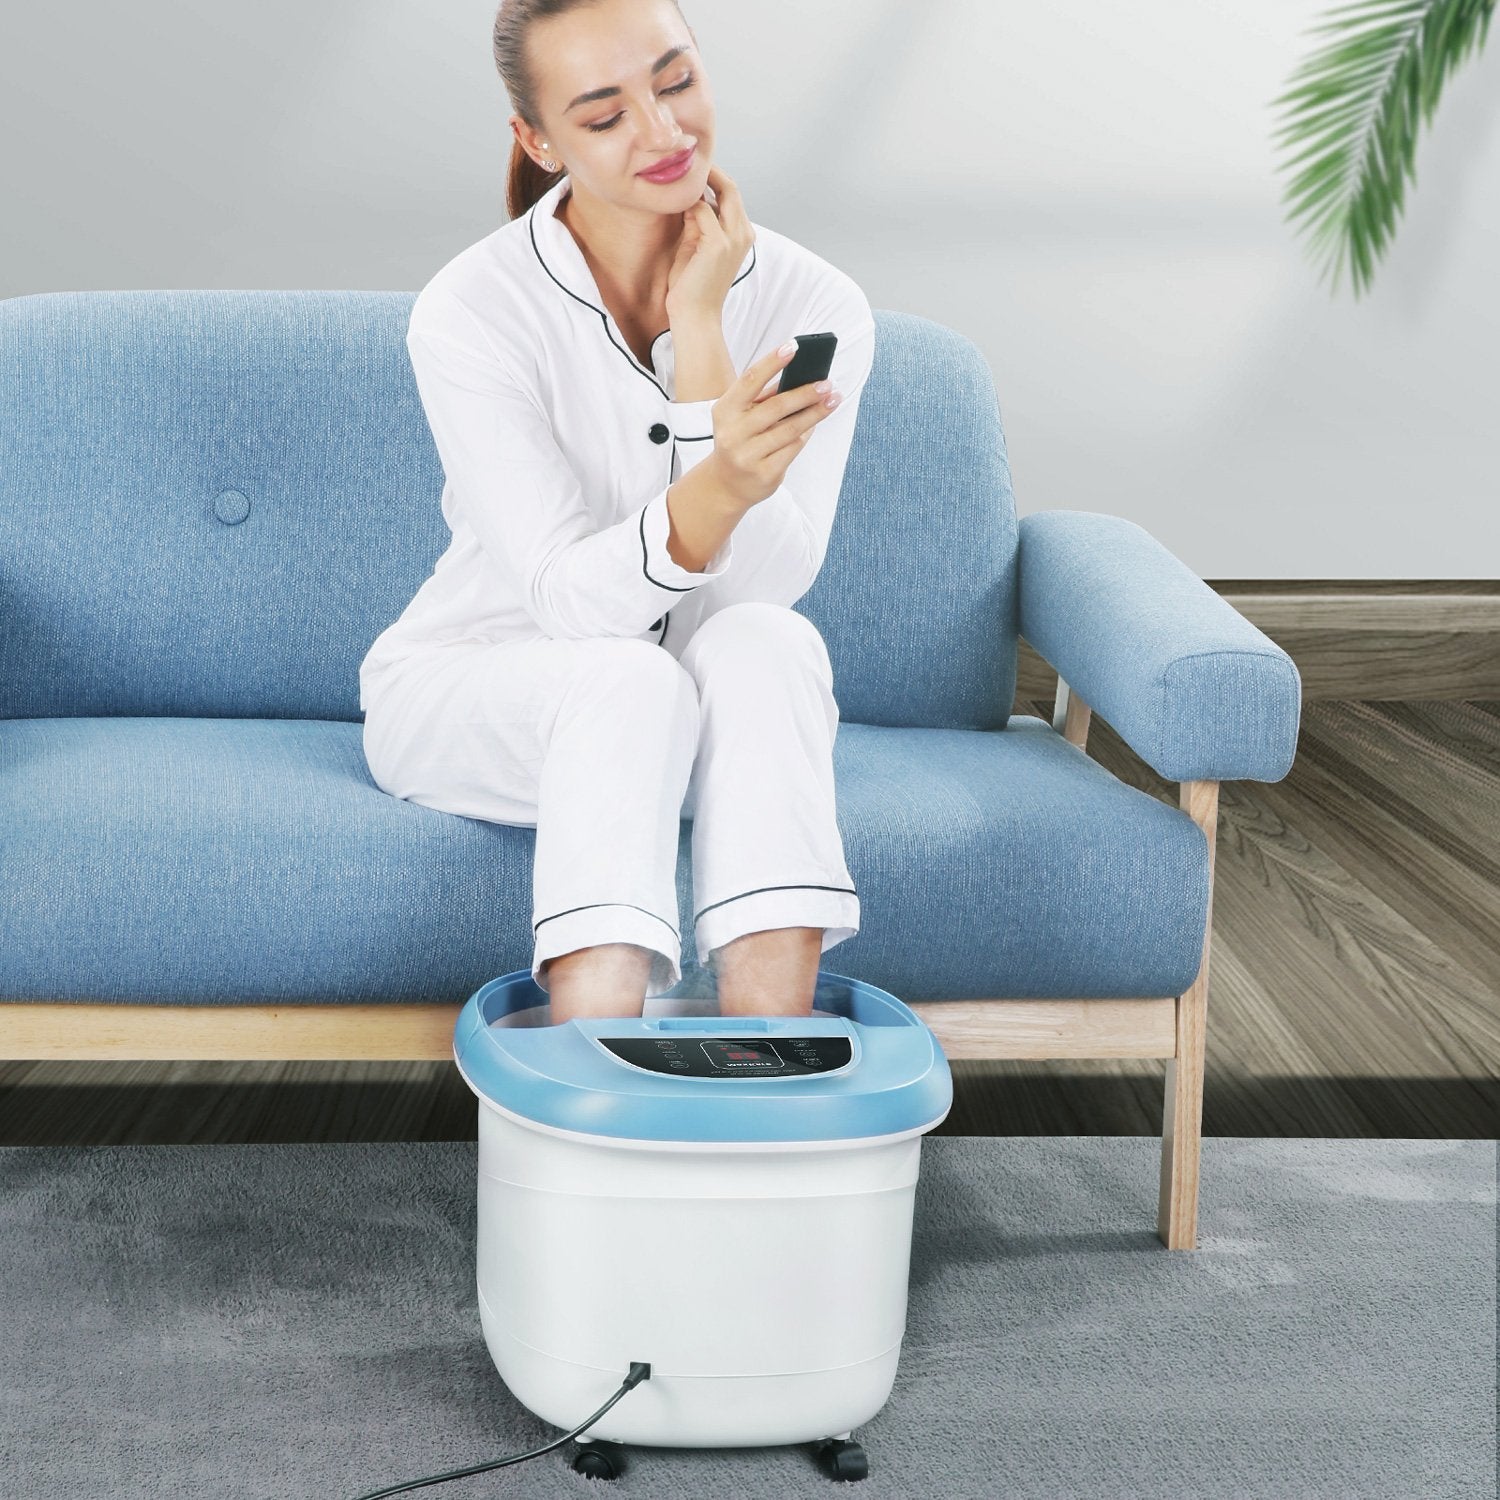 Massager: Rollers Foot Shiatsu – Bath MaxKare Spa 8 Control, MAXKARE Remote Wireless